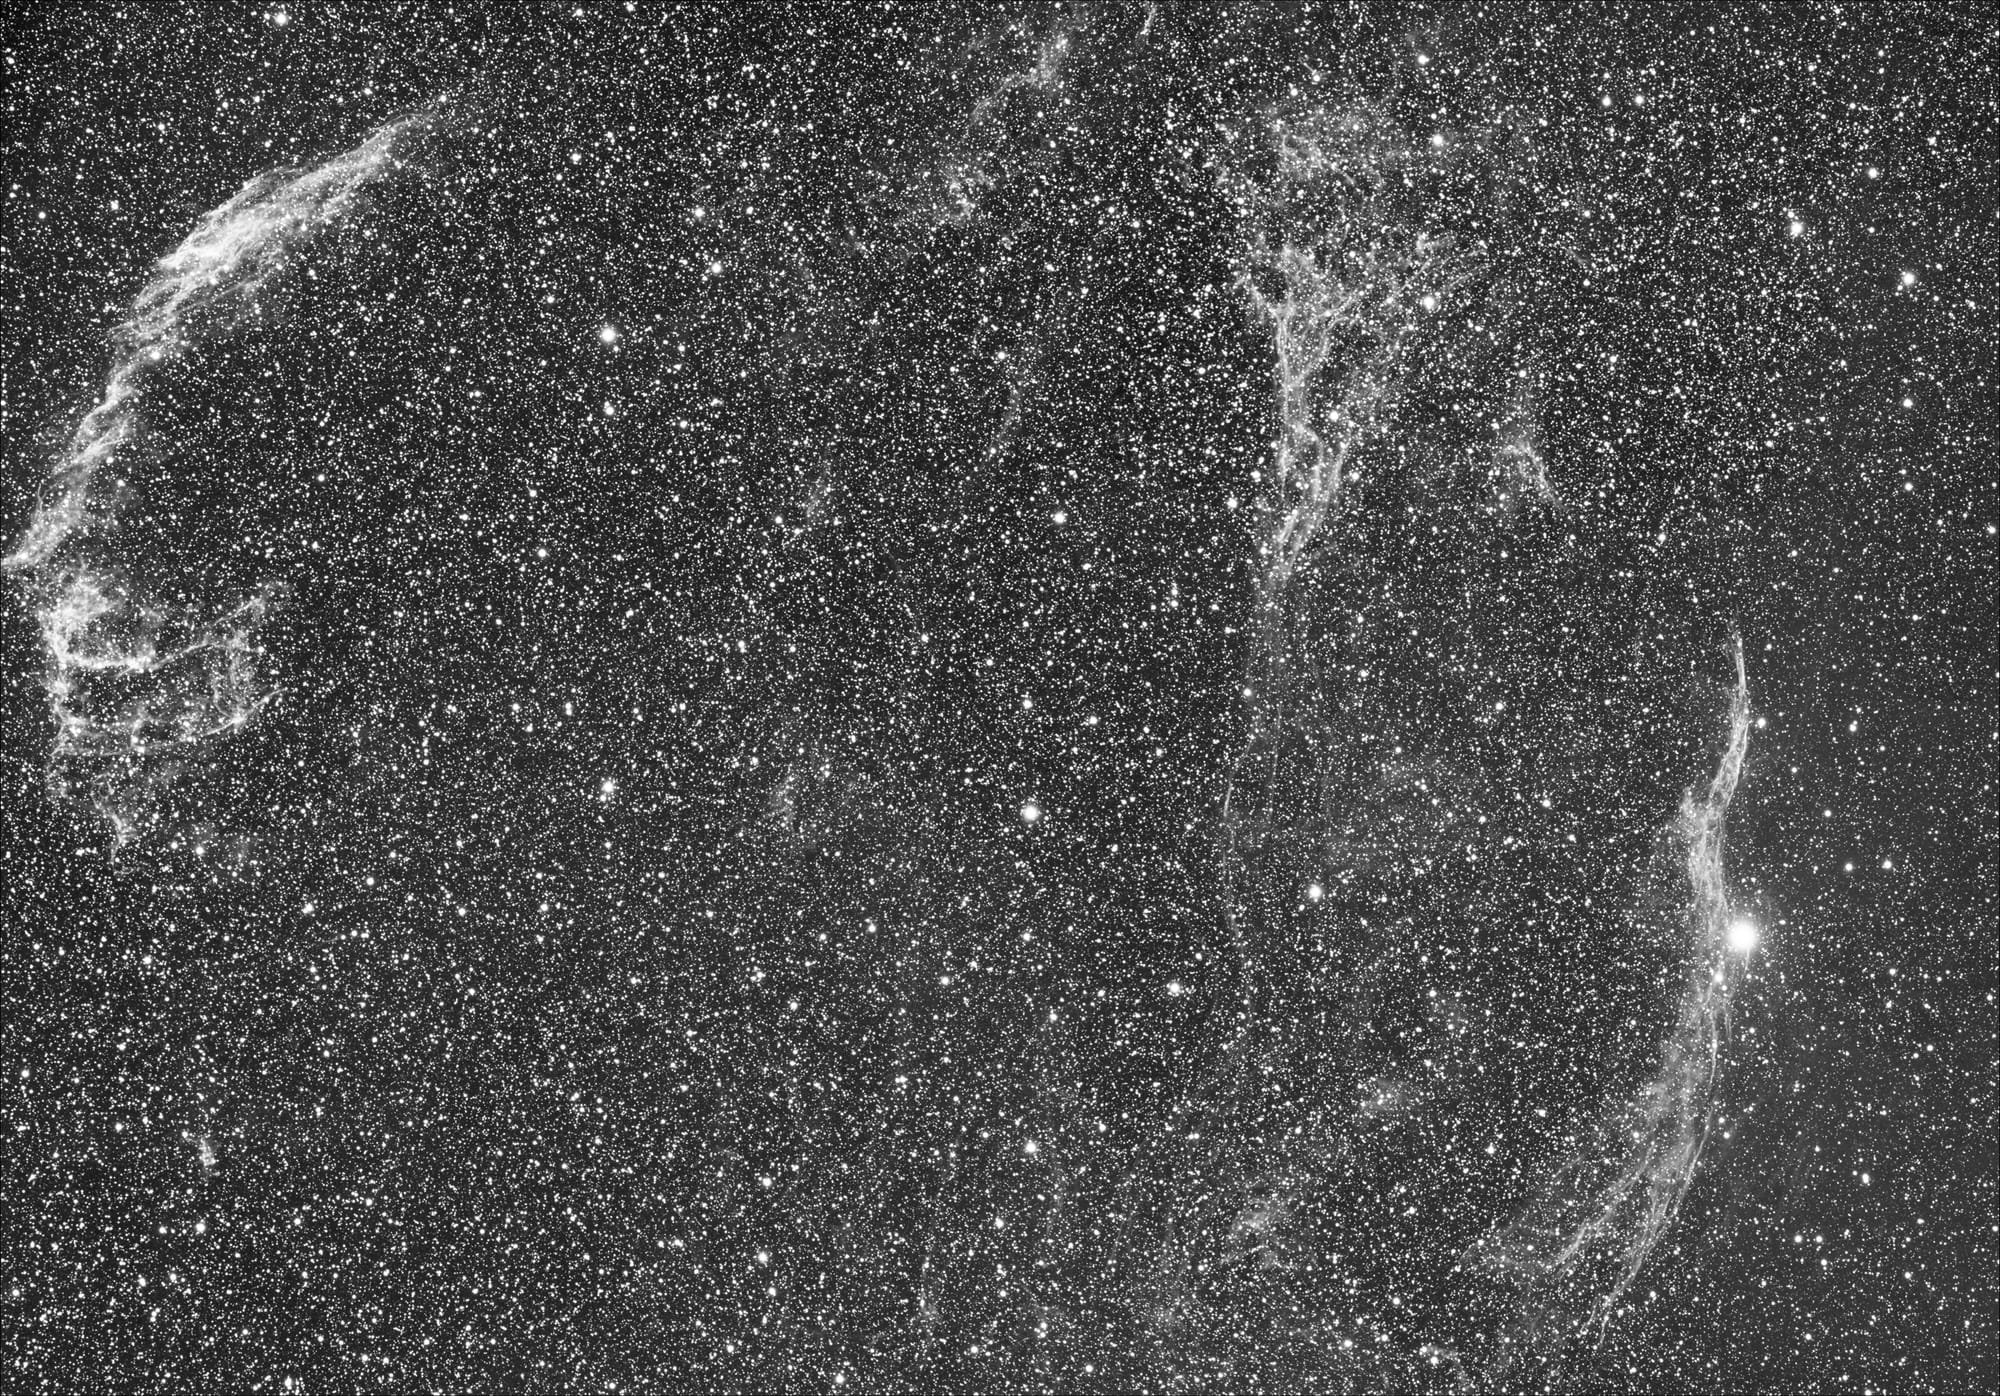 Veil nebula (four-pane MOSAIC)